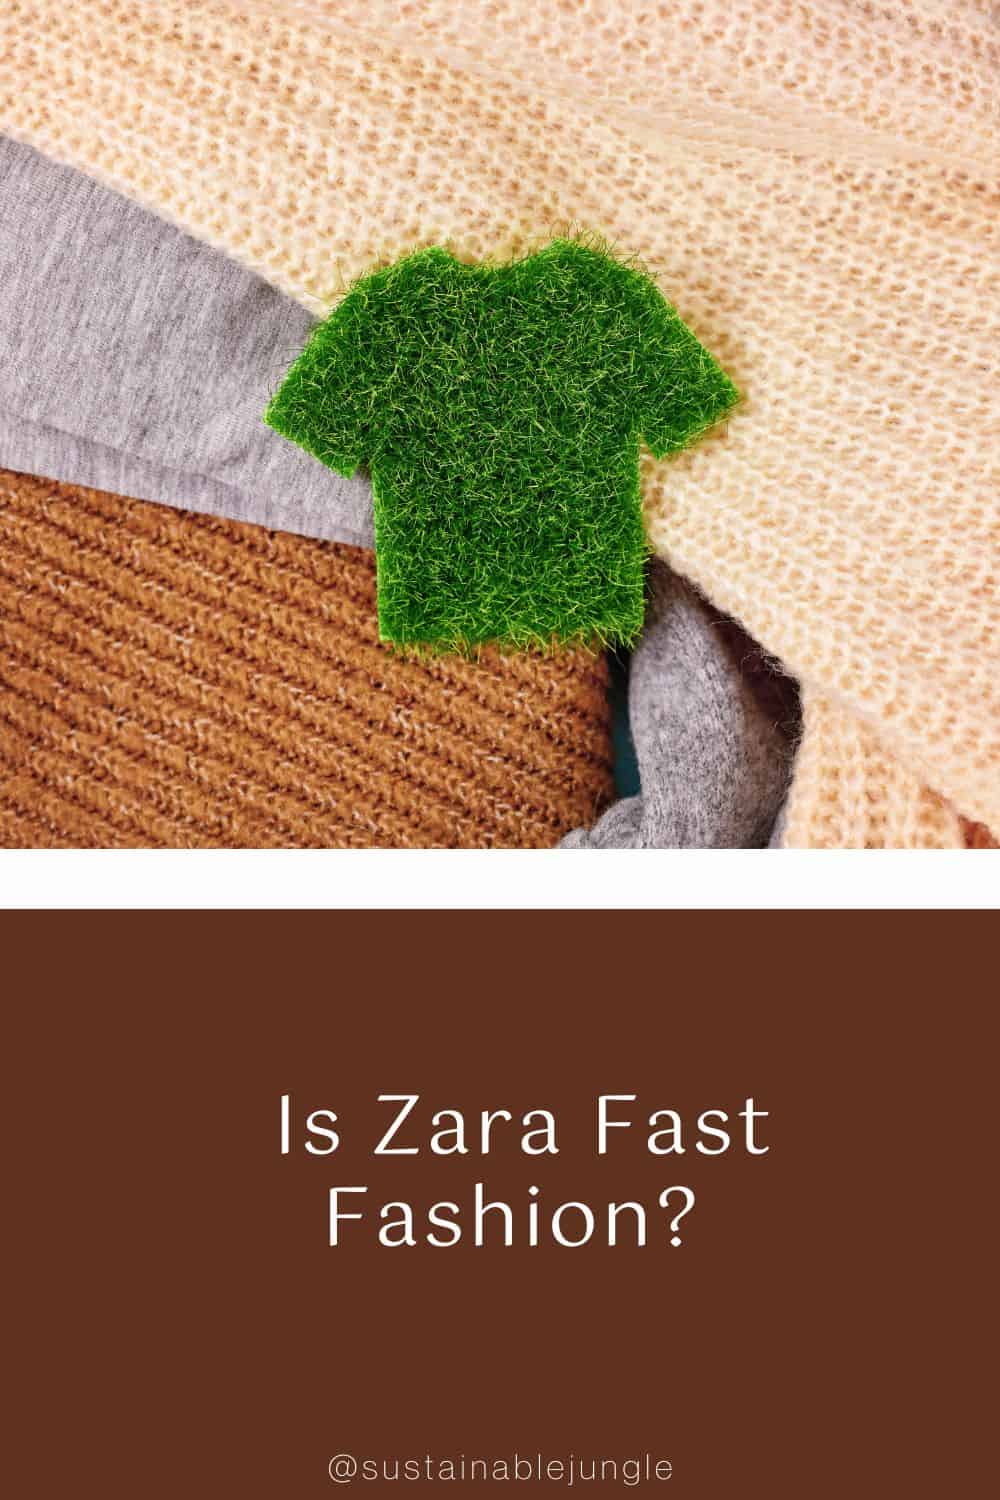 Is Zara Fast Fashion? Image by Fir #iszarafastfashion #Zarasustainability #isZarasustainable #isZaraethical #isZaraagoodbrand #isZarabad #sustainablejungle